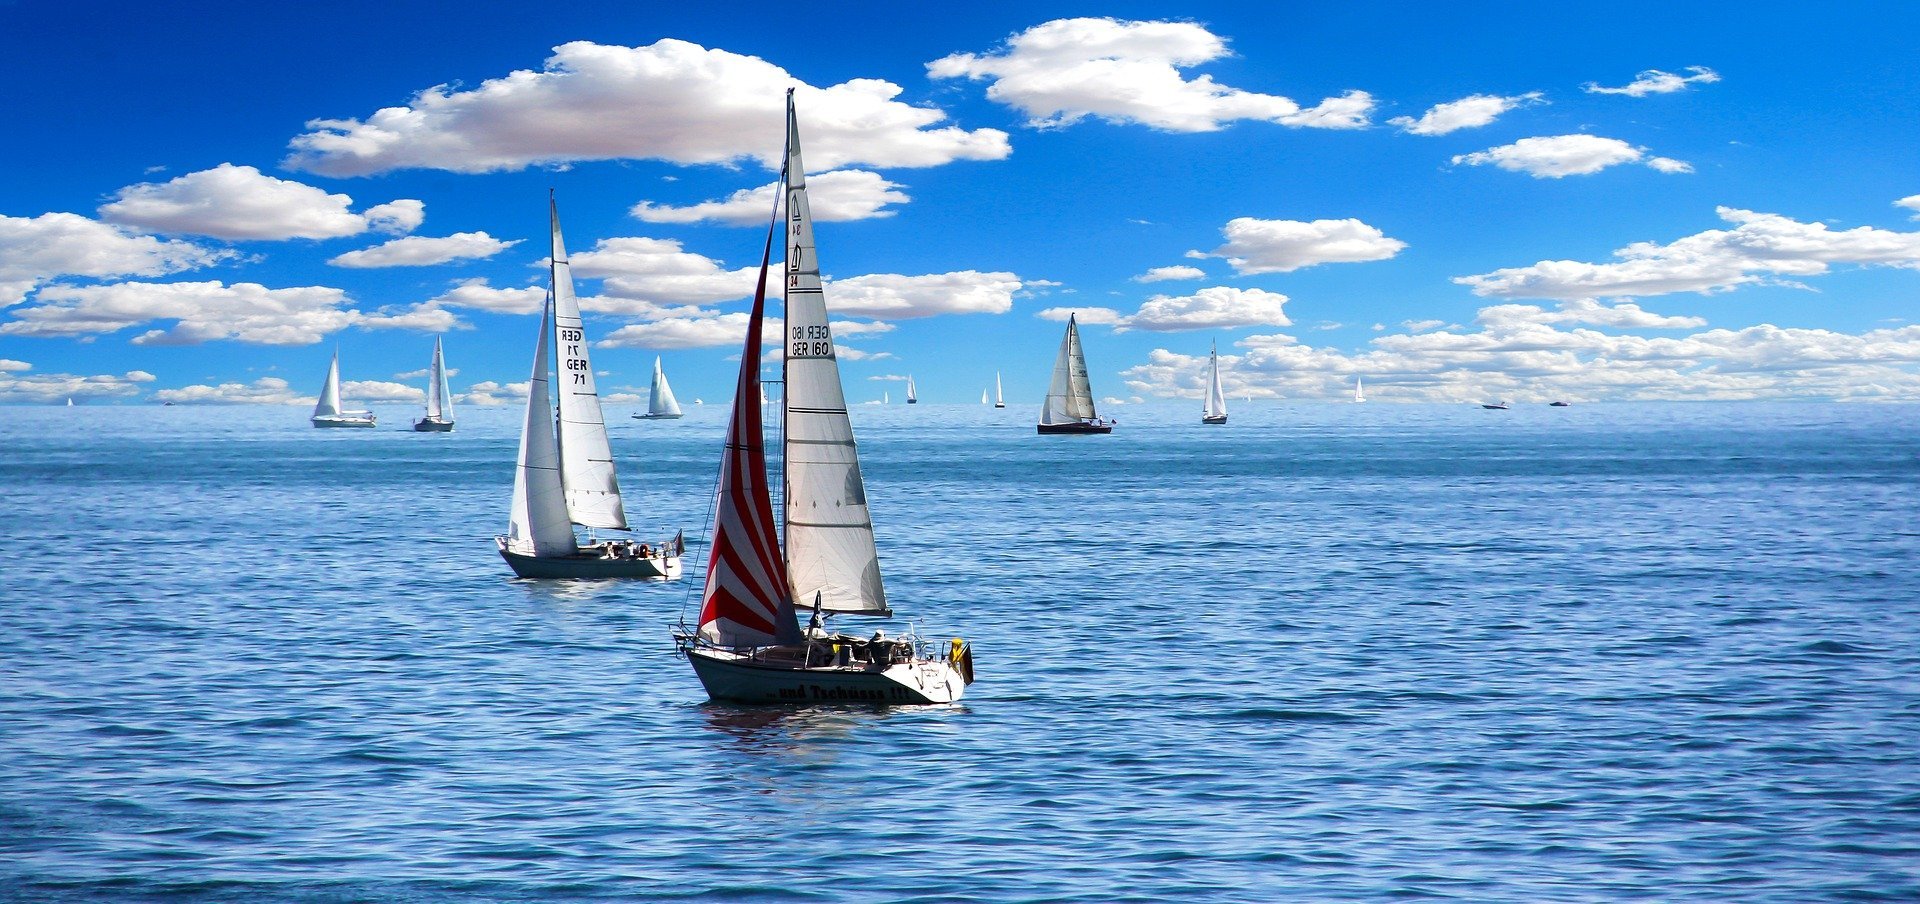 Noleggio catamarano e barca a vela – Trascorrere le vacanze in maniera originale